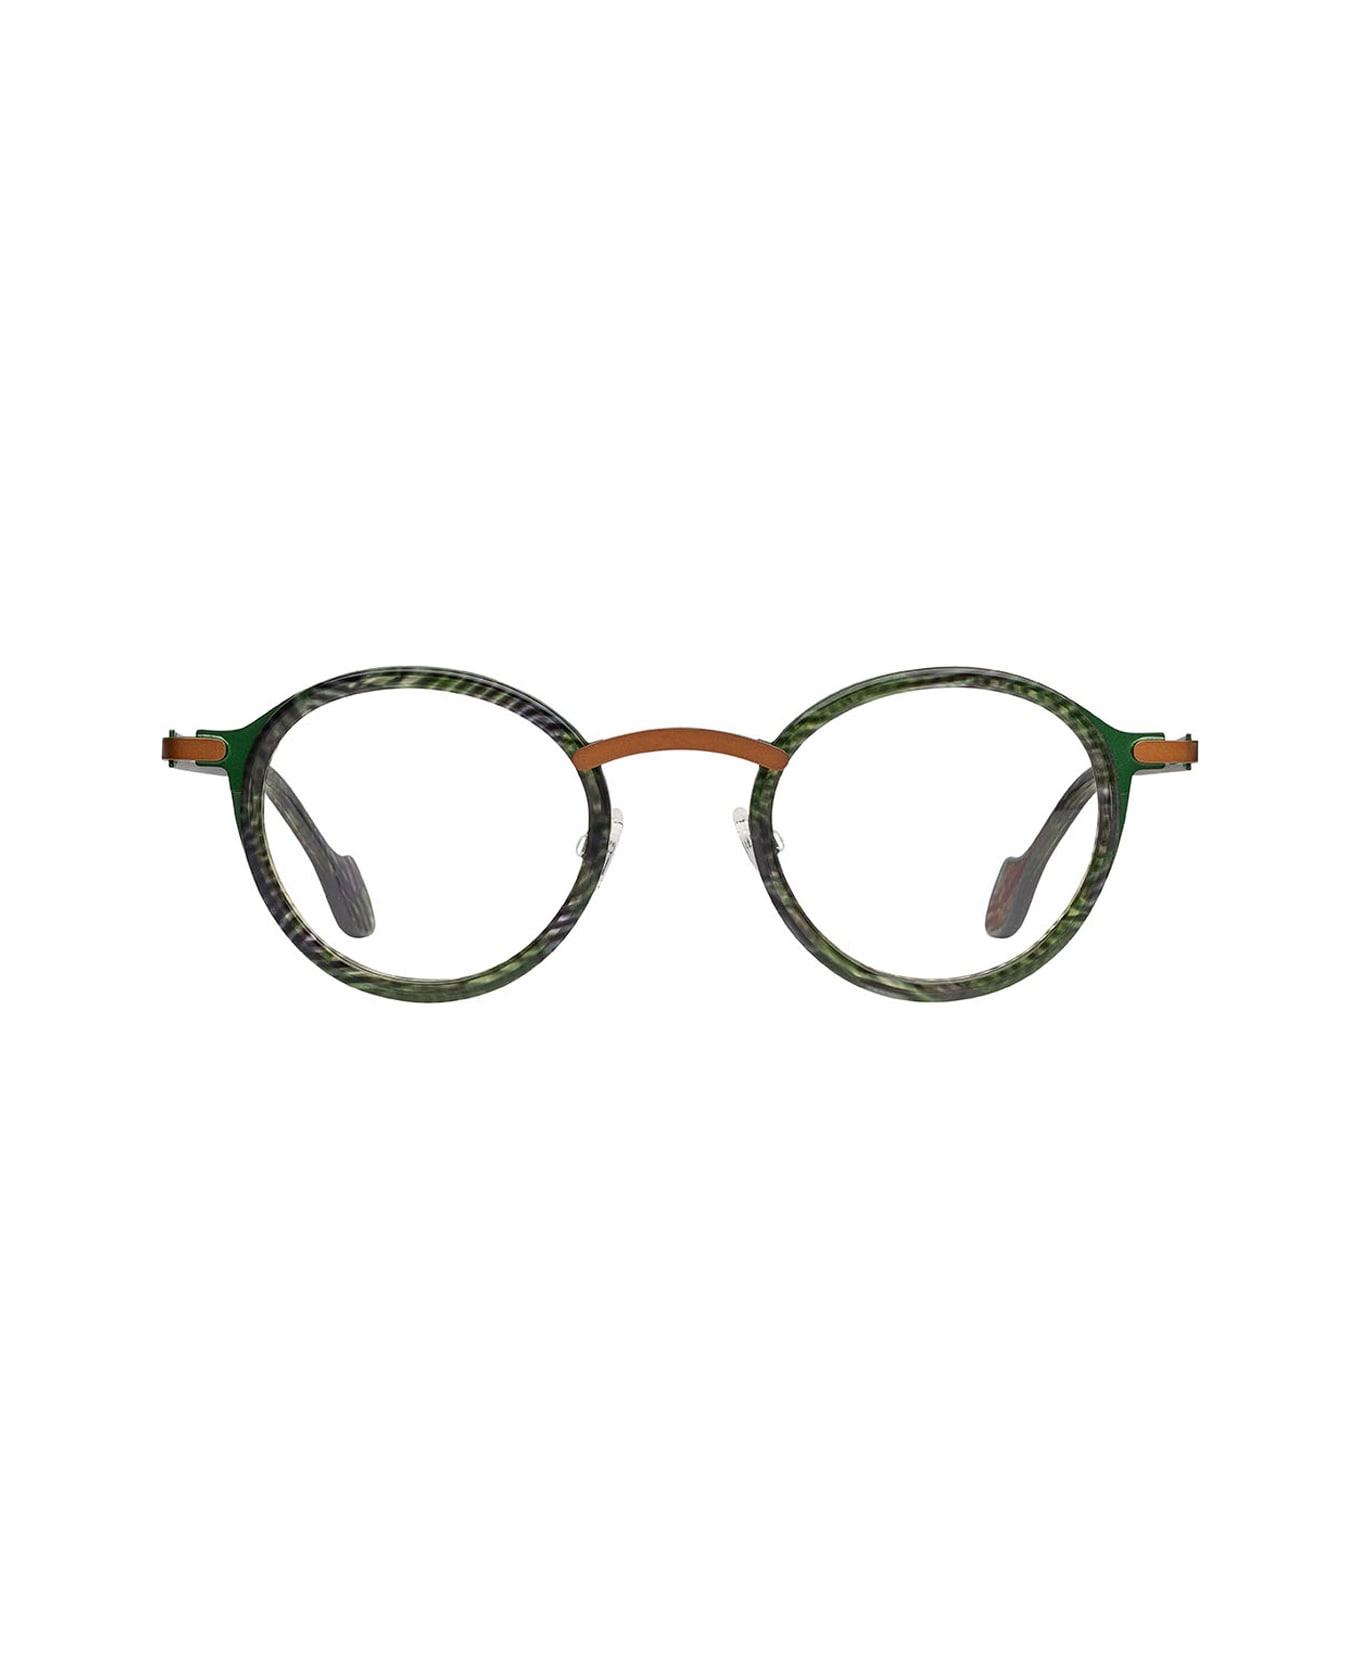 Matttew Waza 74 Glasses - Verde アイウェア